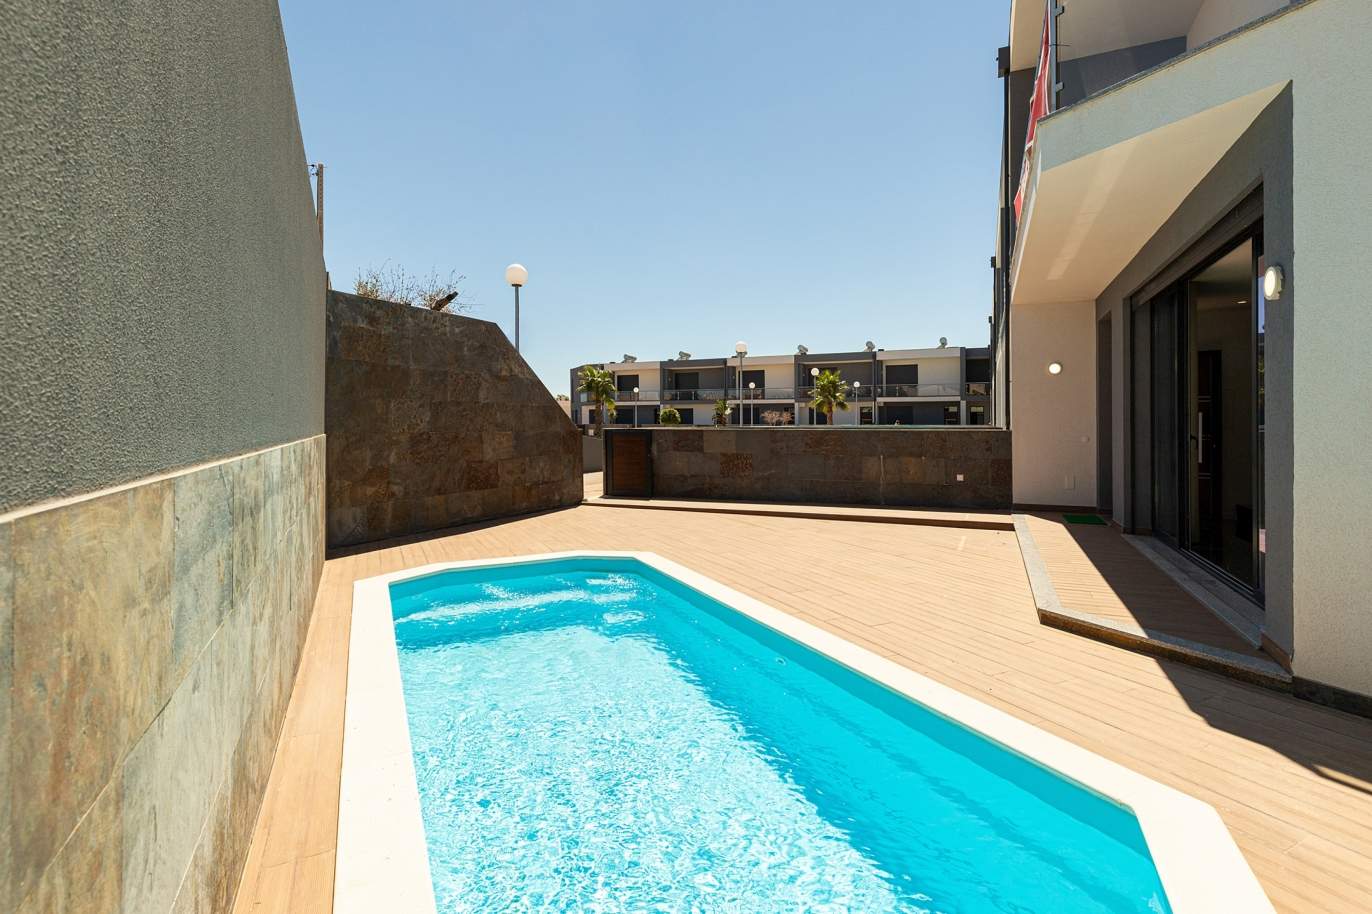 Venda de moradia nova com piscina em Albufeira, Algarve_173939